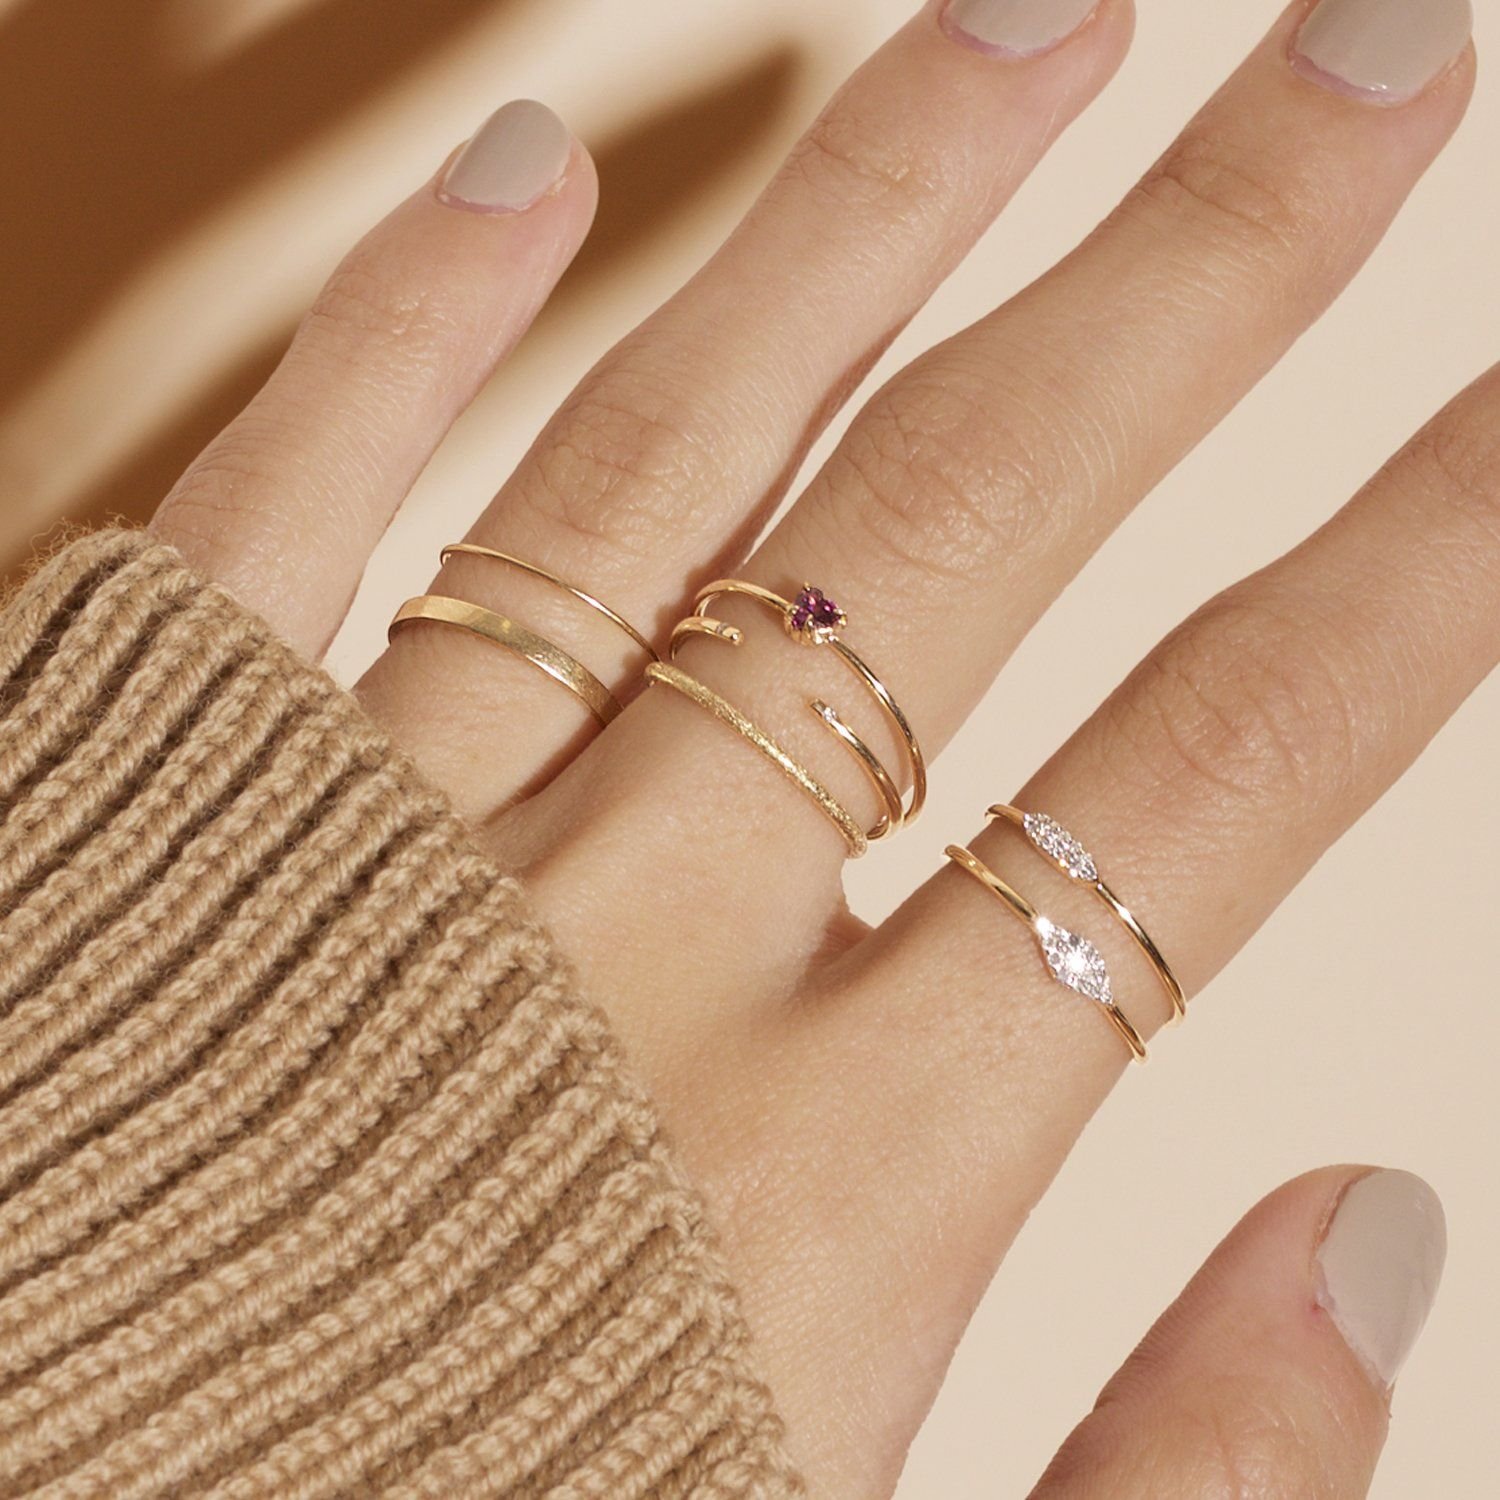 Надеты кольца золотые. Тонкие кольца на пальцах. Несколько колец на руке. Несколько колец на пальце. Модные золотые кольца.